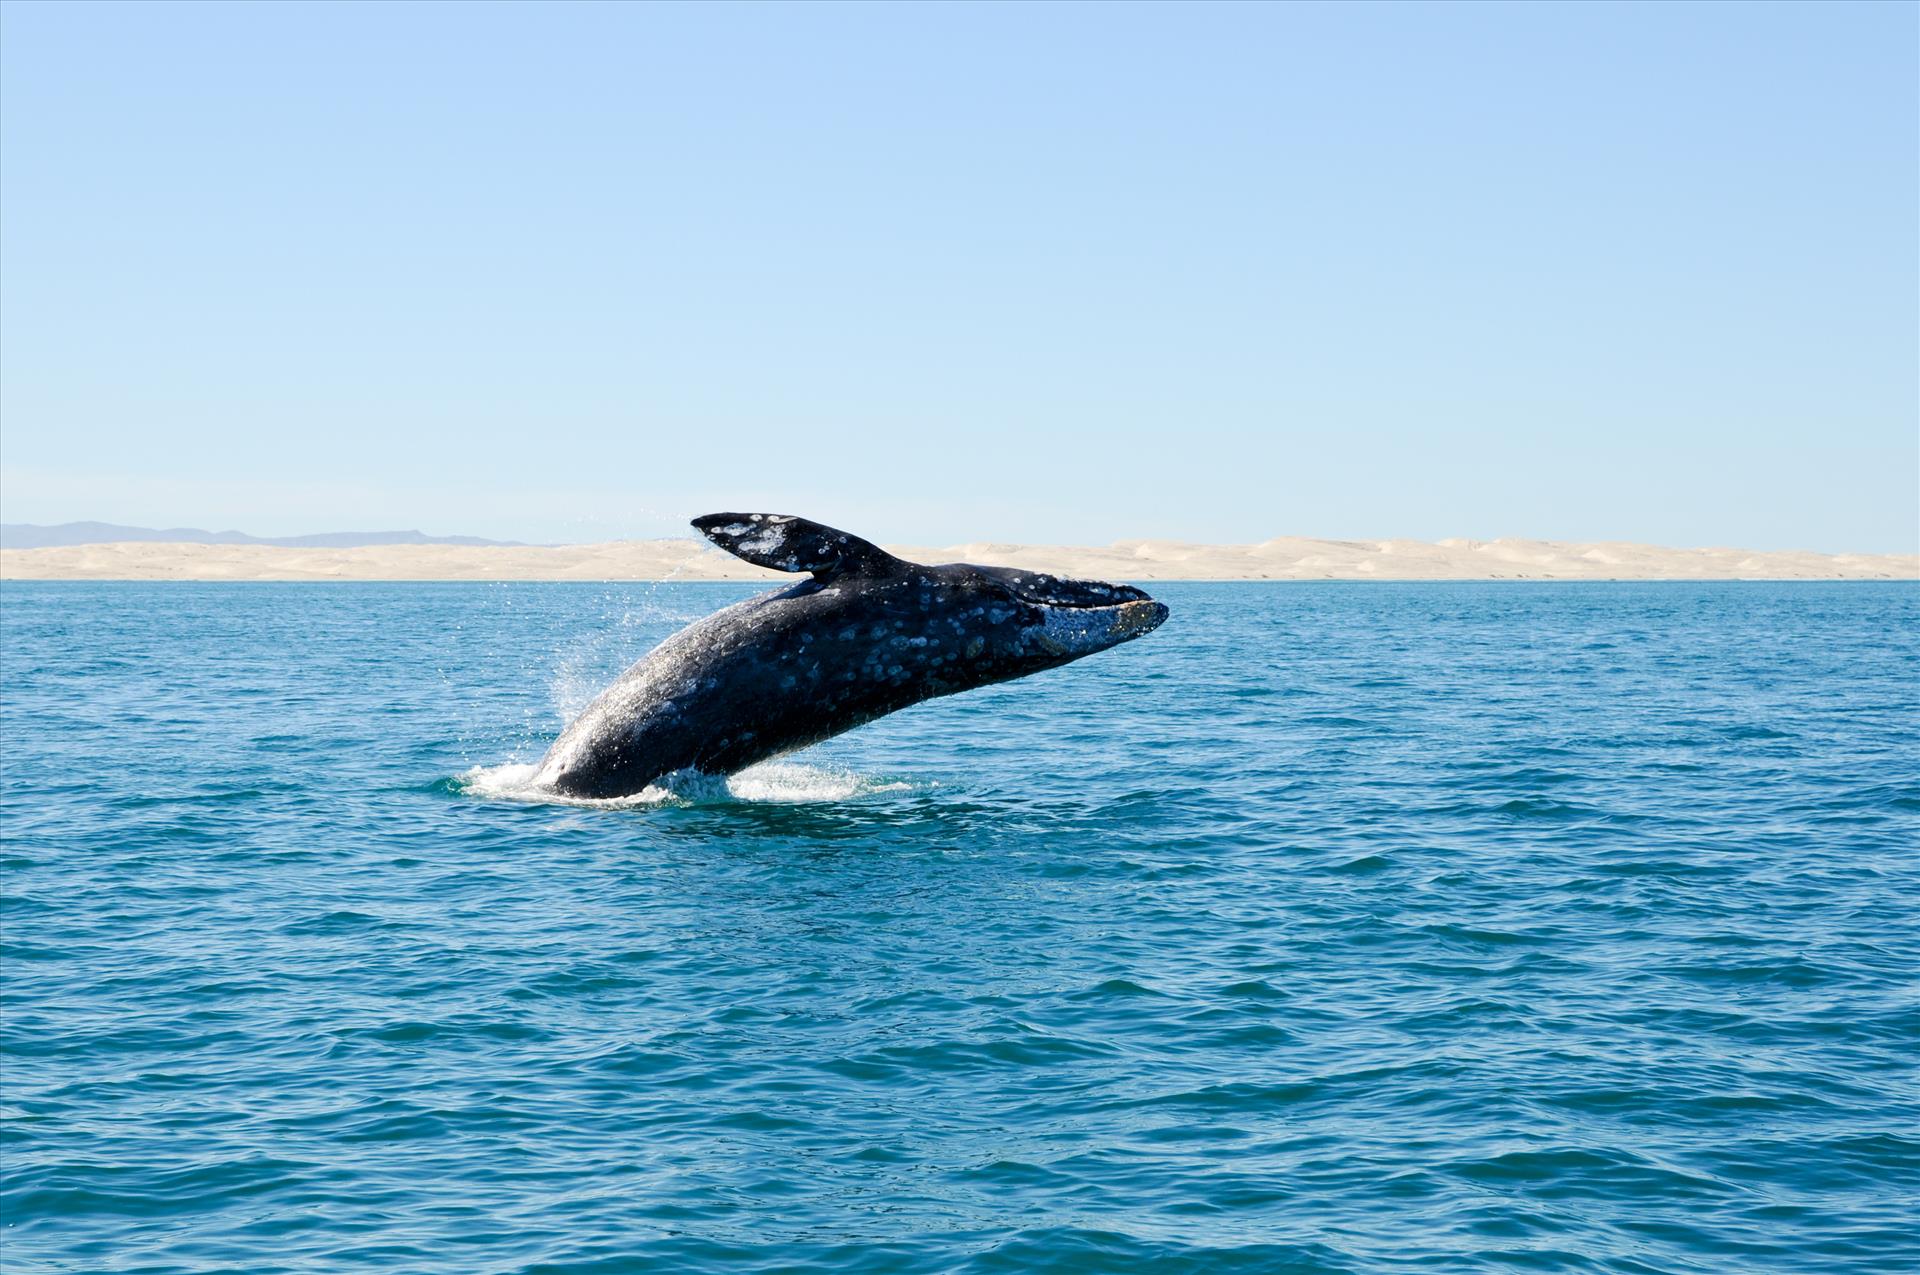 Ballena saltando durante el tour de ballenas en Guerrero Negro